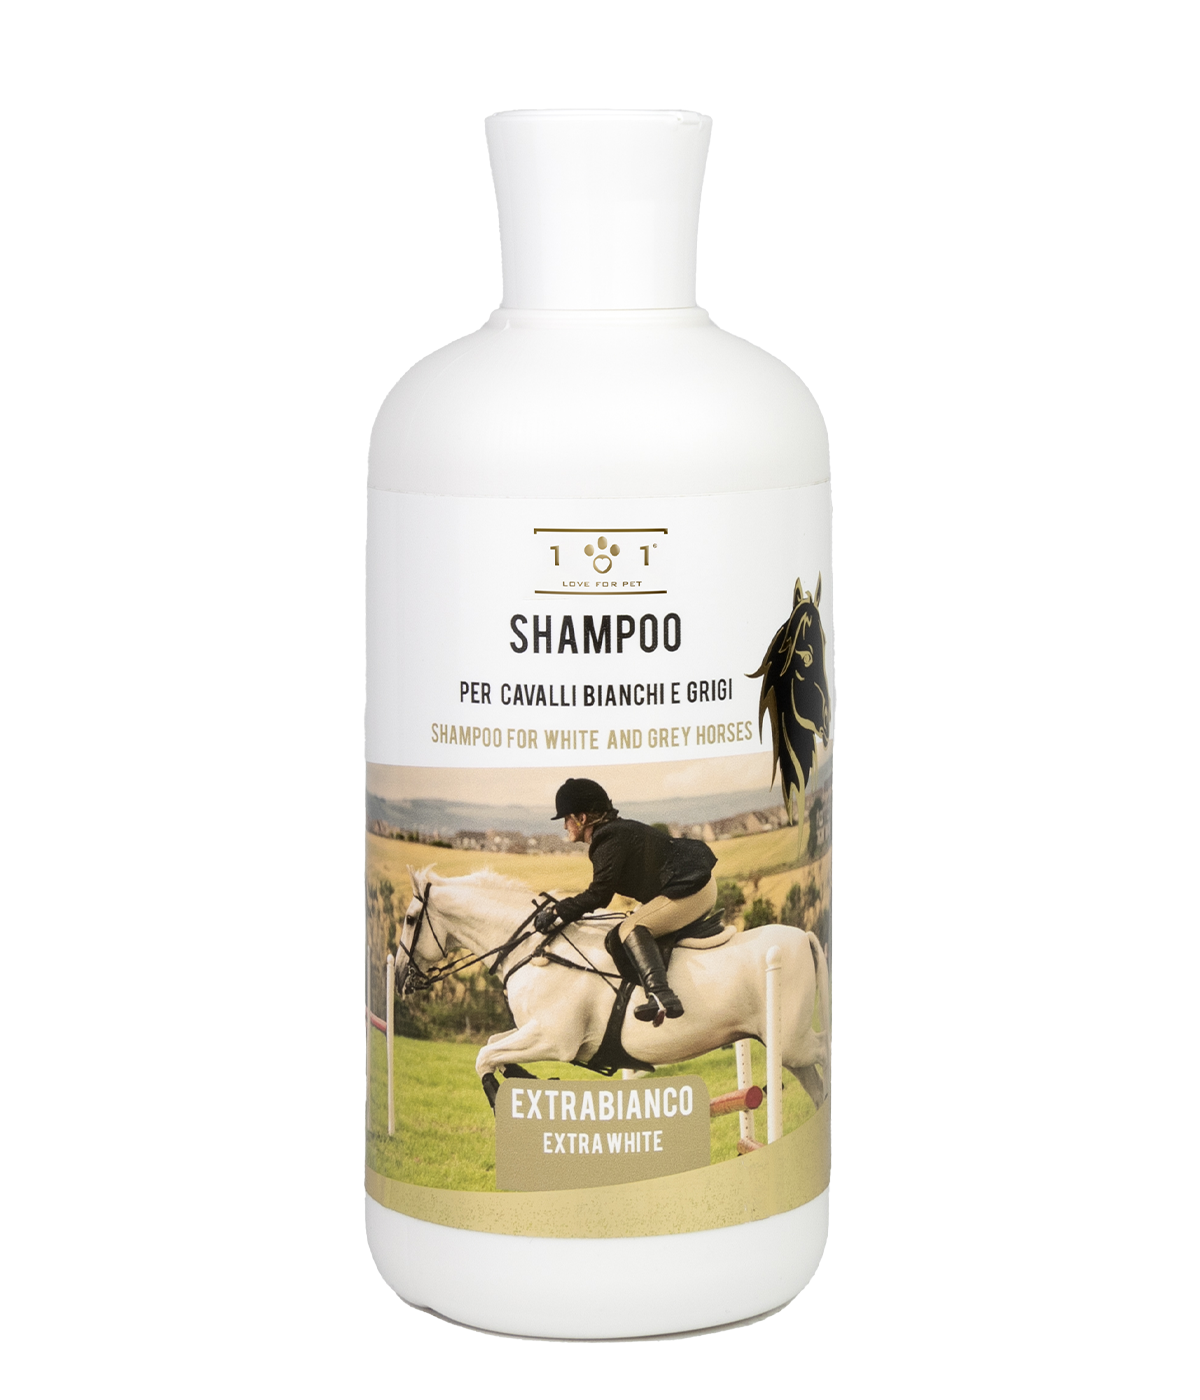 Shampoo per cavalli bianchi e grigi